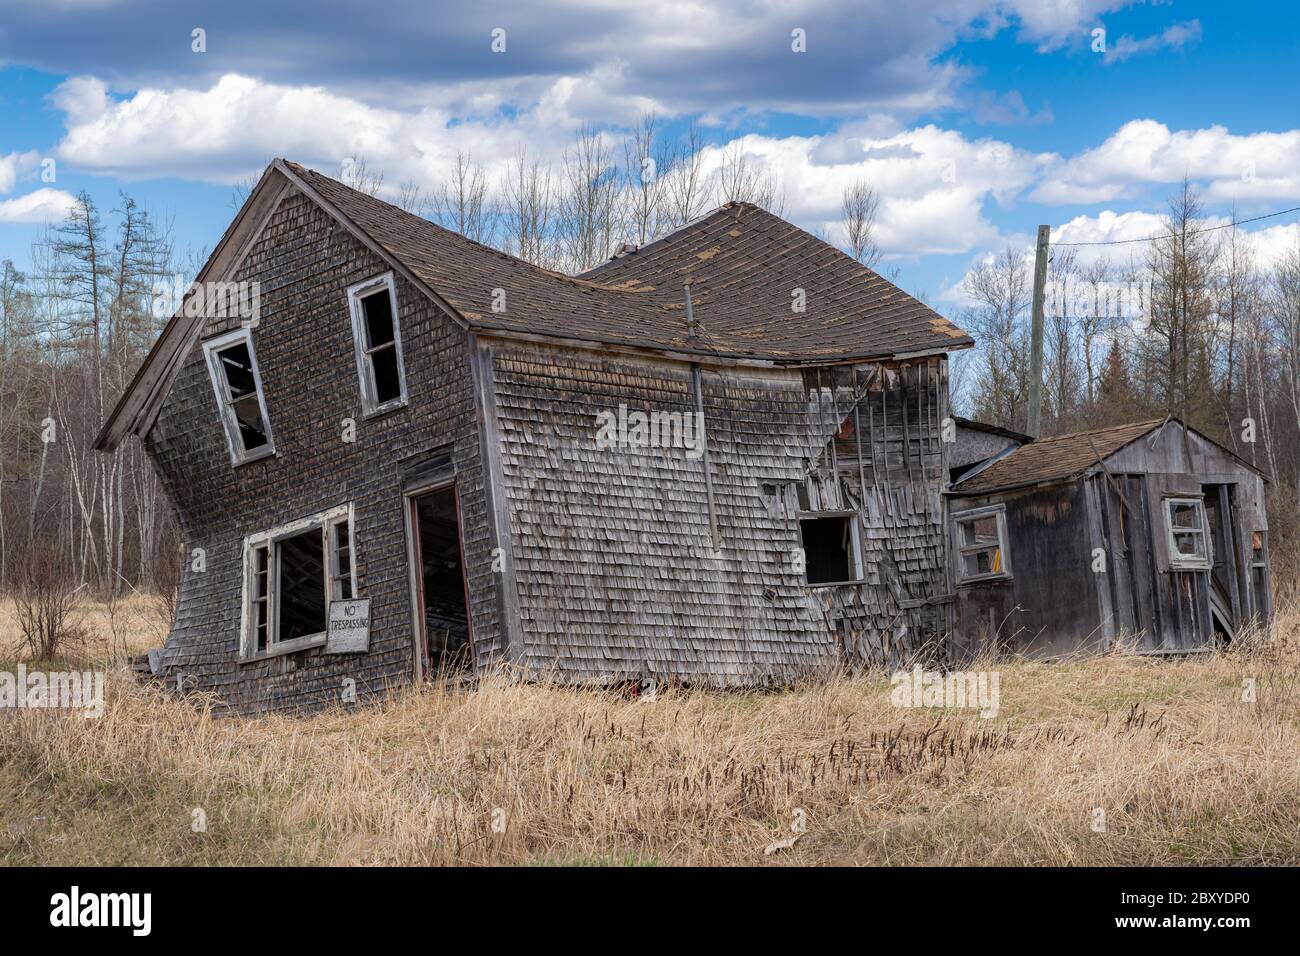 Une maison abandonnée qui s'effondre dans un champ. Fenêtres et porte cassées, pas d'affiche d'intrusion à l'avant. Ciel bleu avec nuages. Banque D'Images